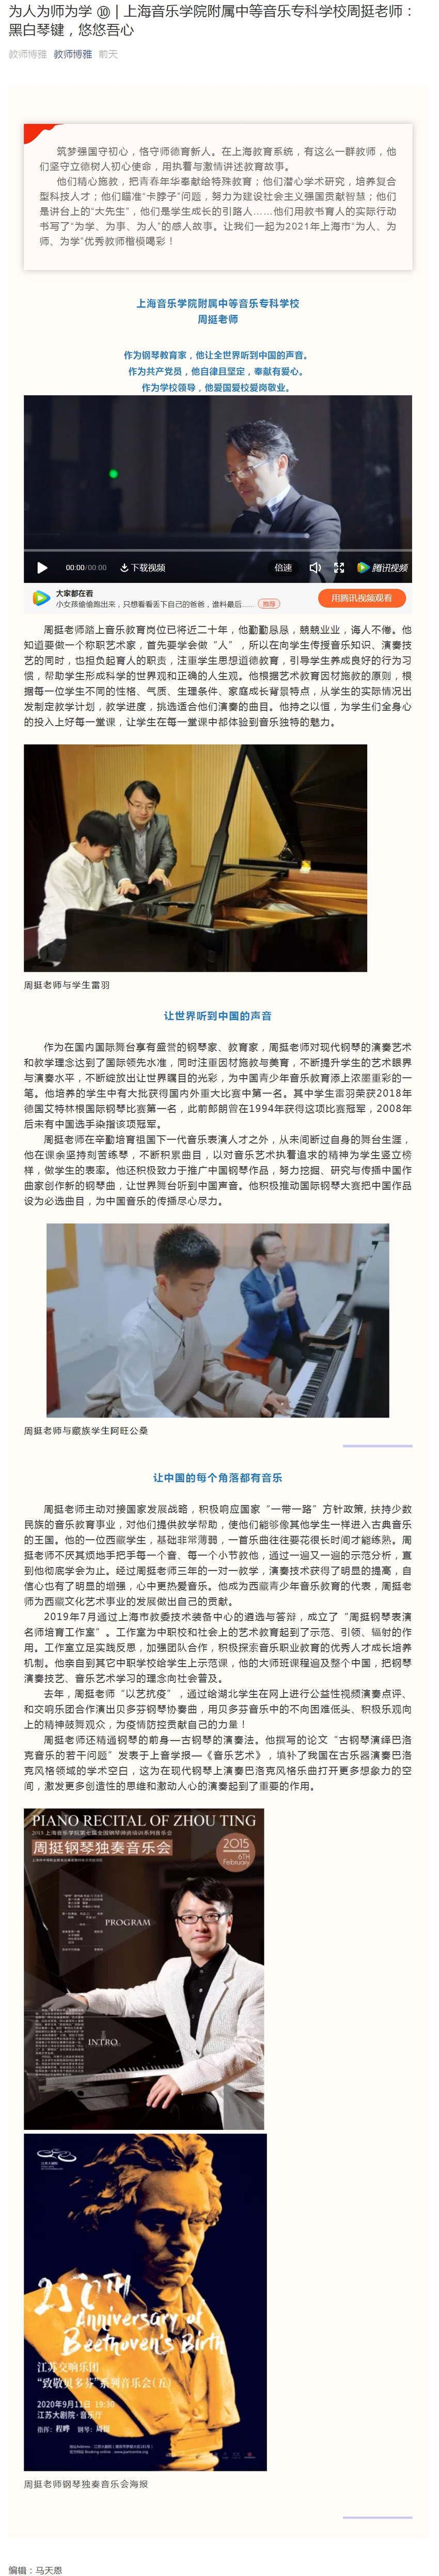 周挺老师被评为上海市中职系统“为师、为人、为学”先进典型